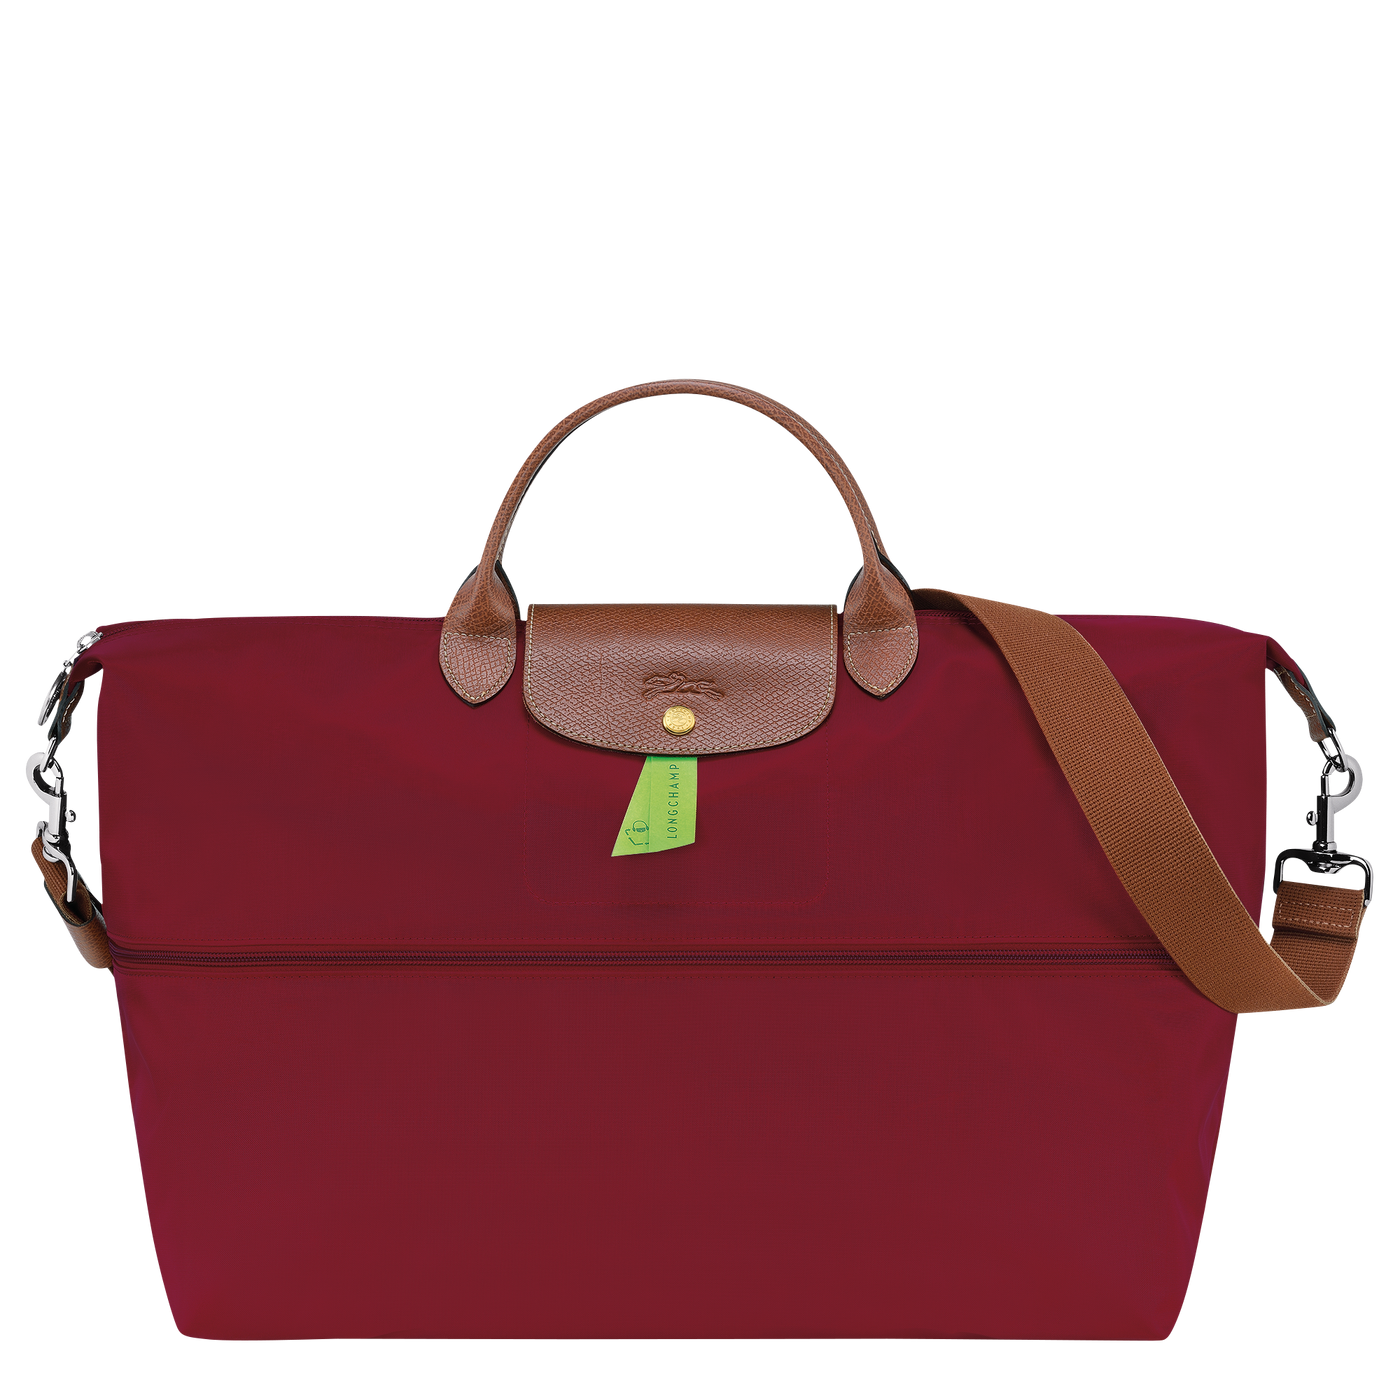 Le Pliage Original Travel Bag Expandable - L1911089